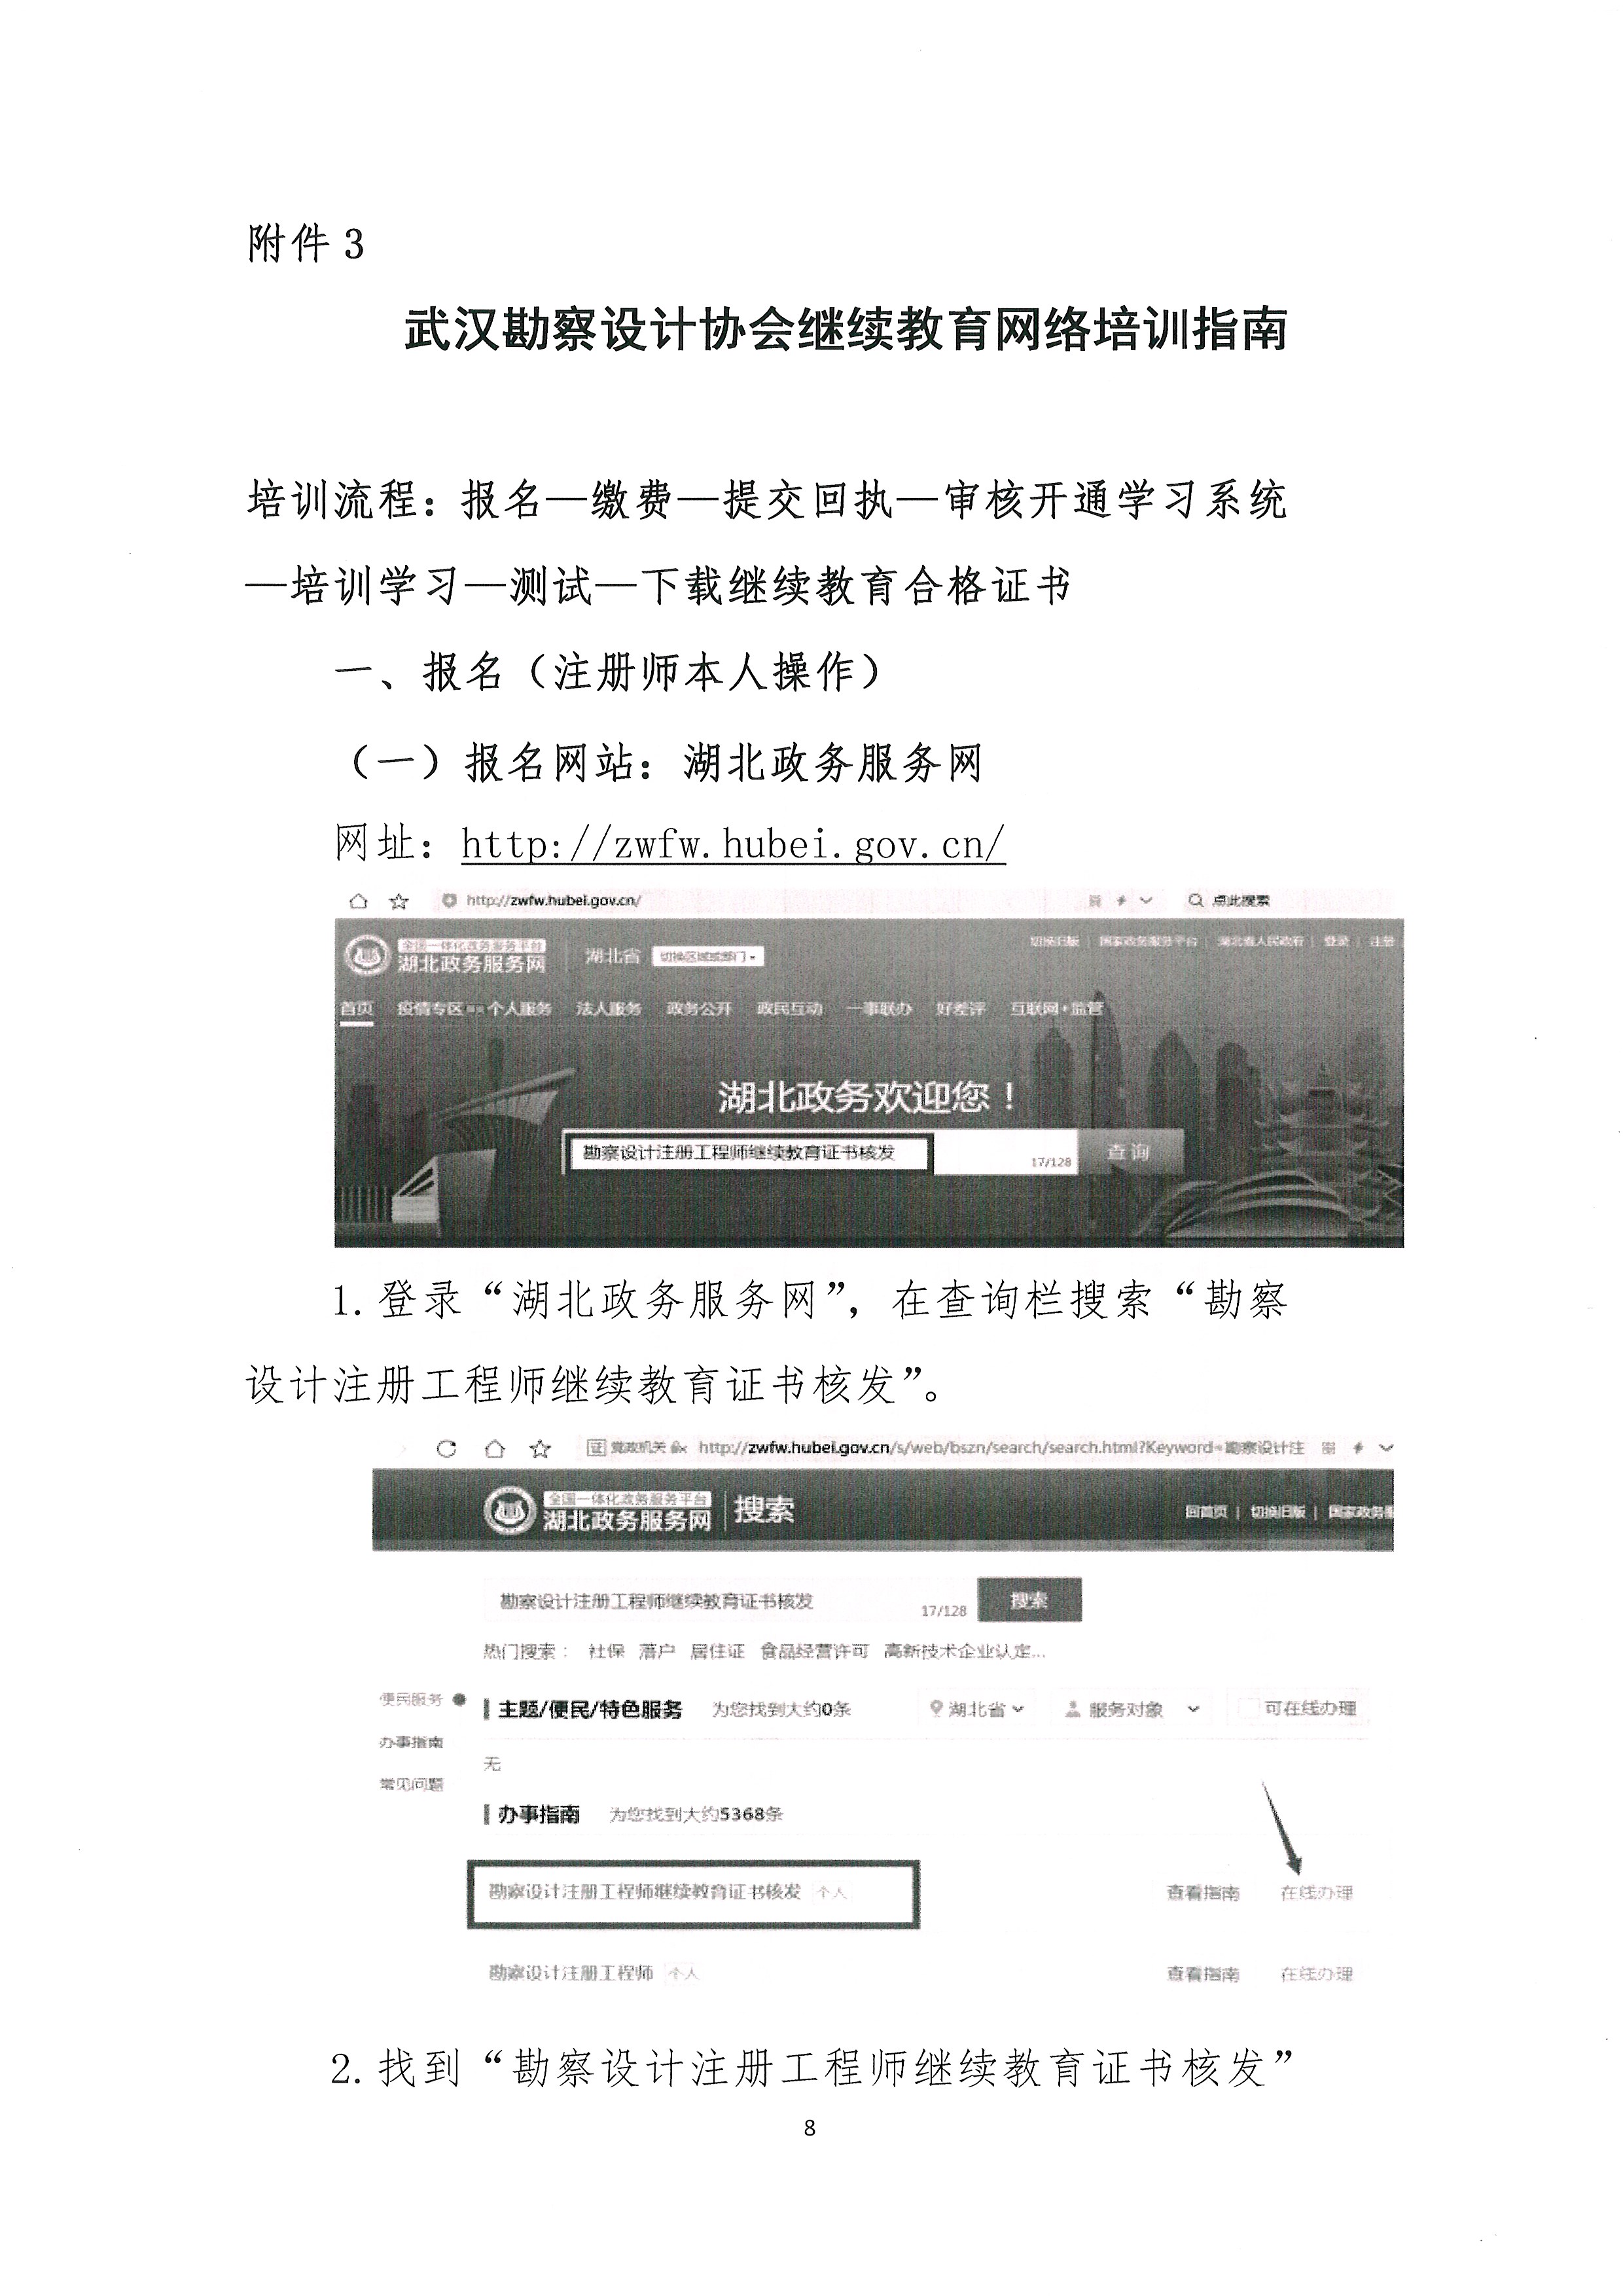 关于开展2021年武汉市注册建筑师、注册结构工程师专业技术继续教育网络培训的通知